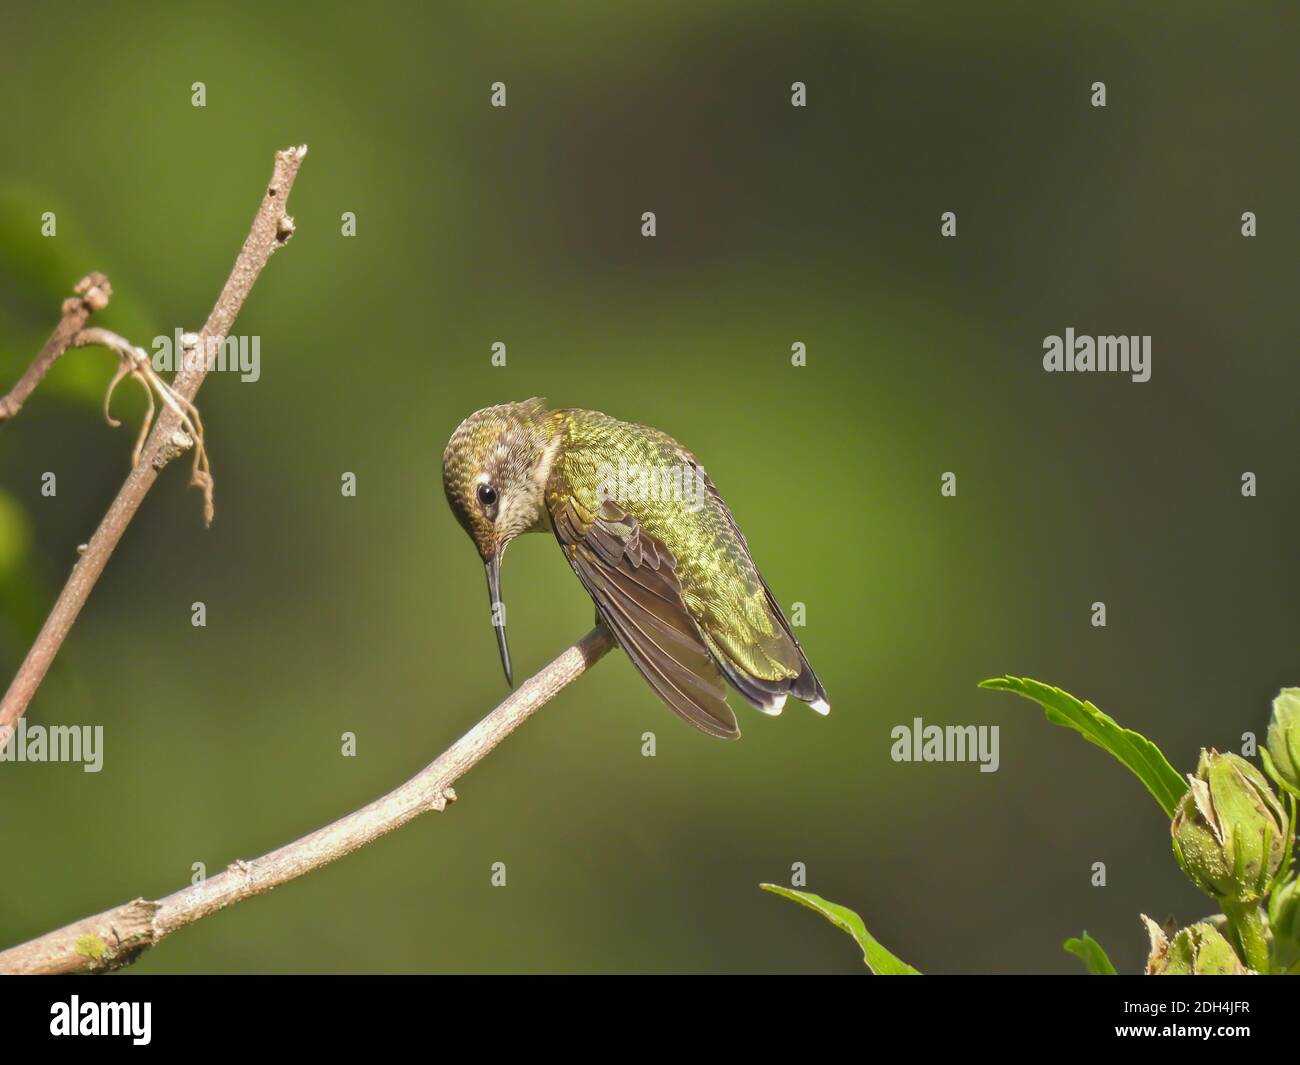 Rubinkehliger Kolibri lehnt sich mit einem schmalen Schnabel an den Ast-Kolibri an Liegt auf dem Bush Stem Stockfoto